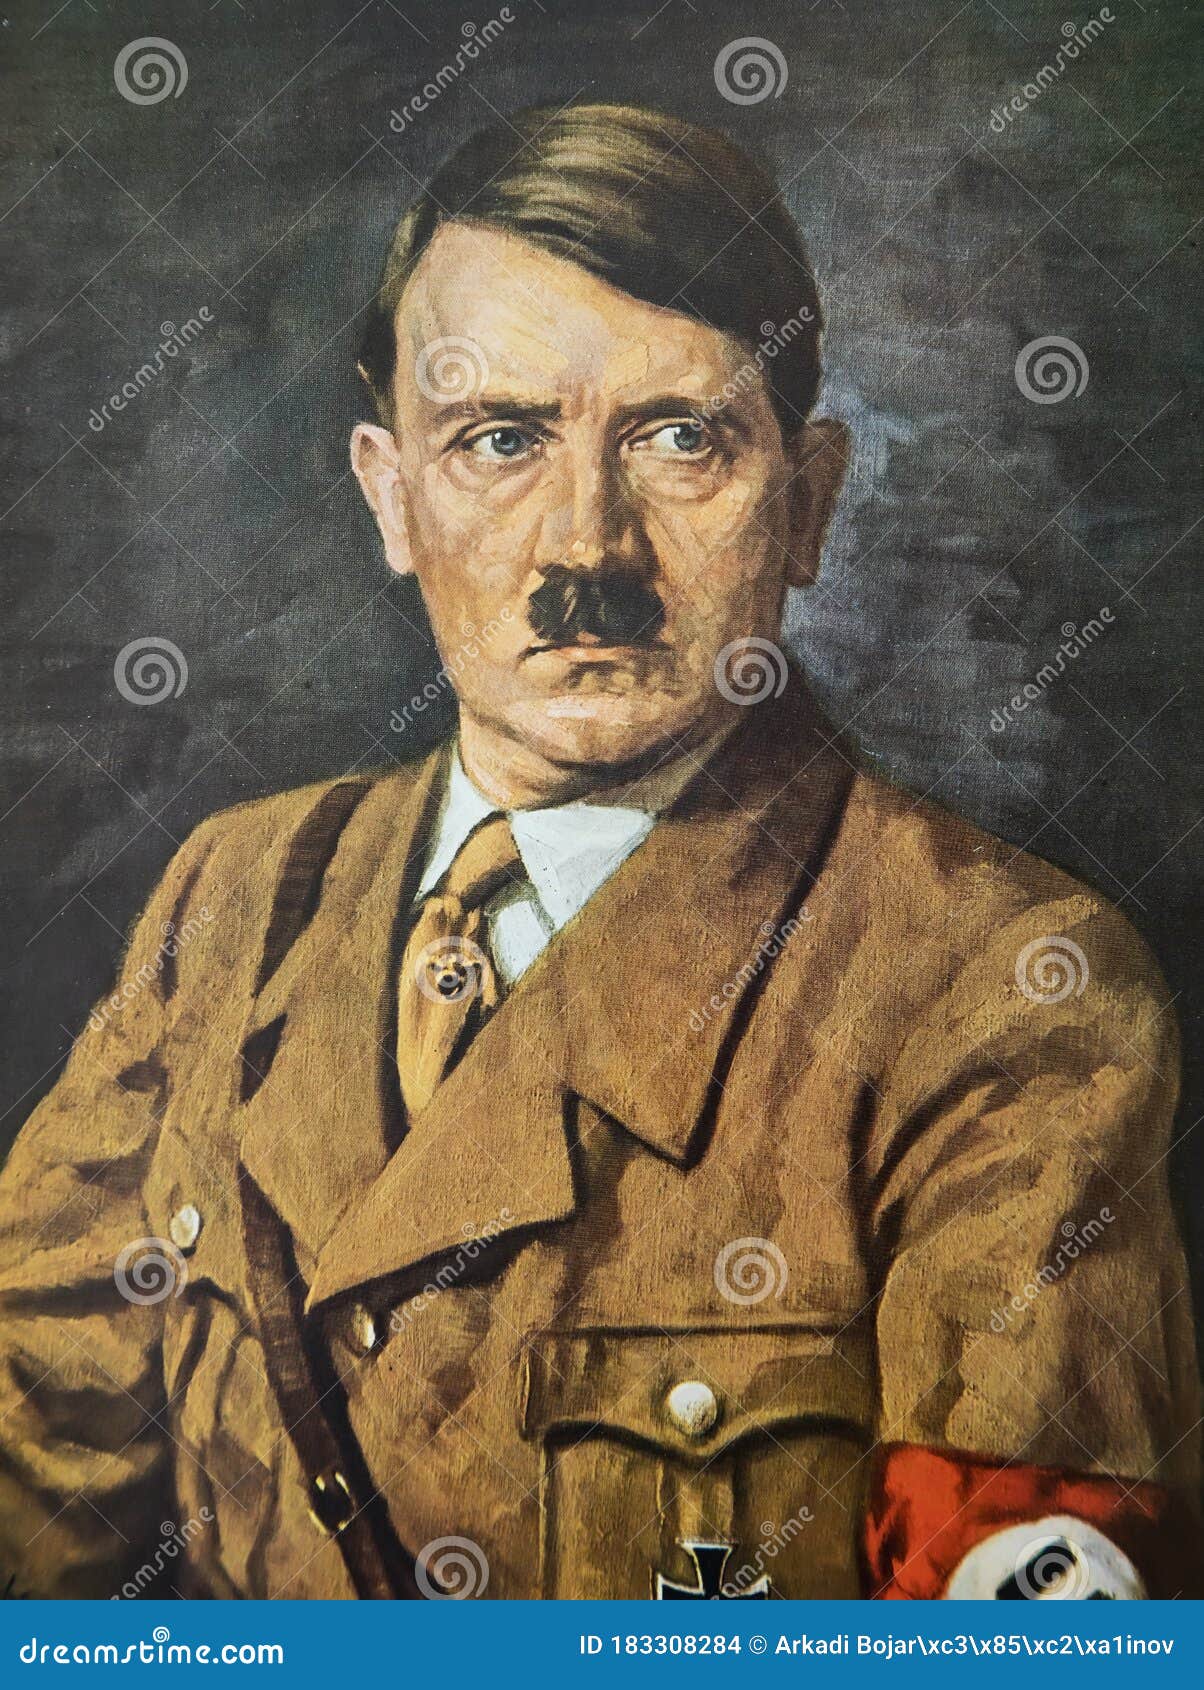 12,967 Hitler Fotos de stock - Fotos libres de regalías de Dreamstime